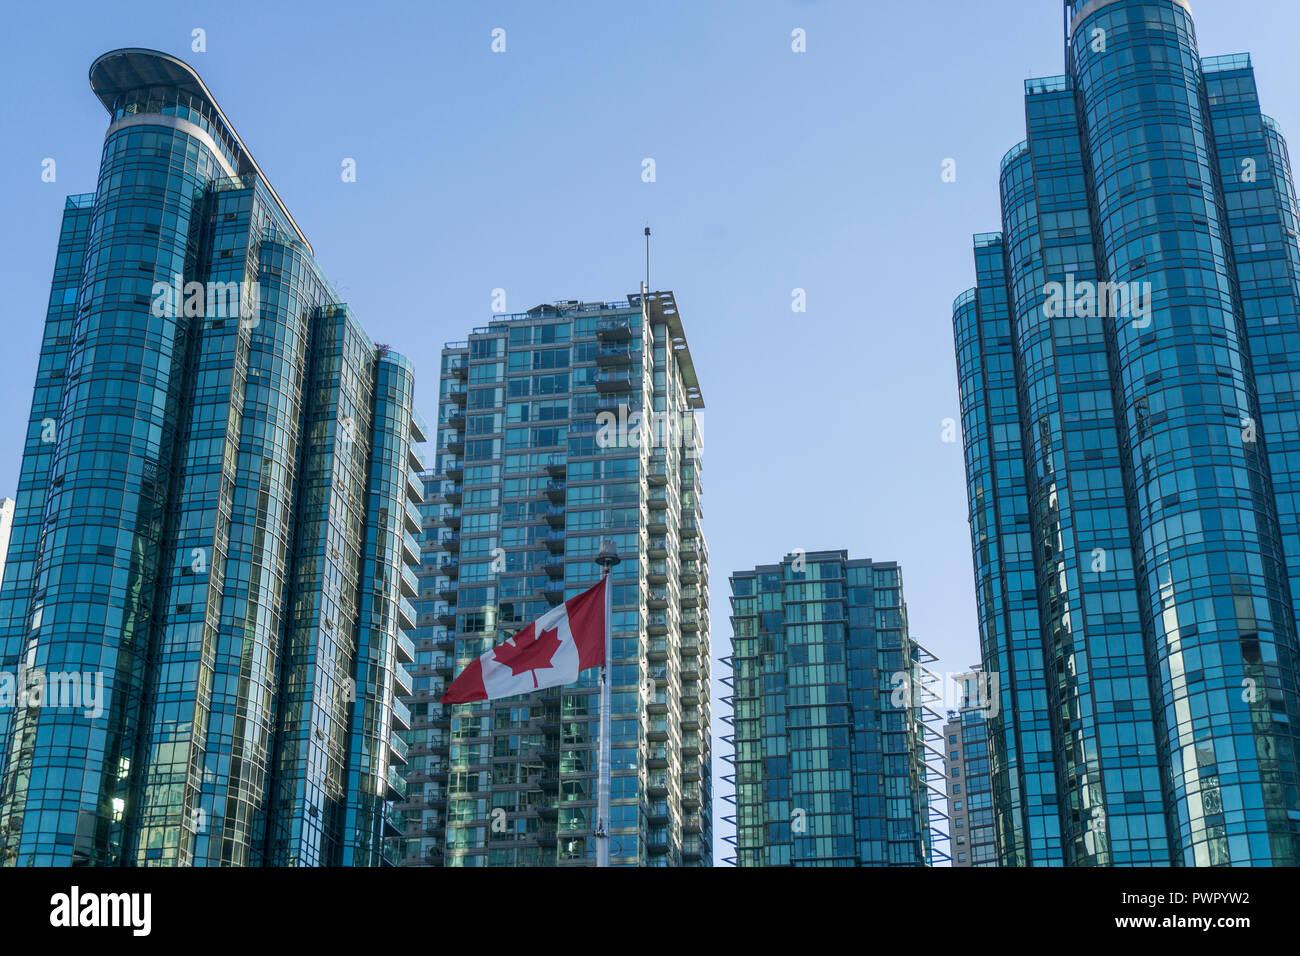 Bandiera canadese di fronte all edificio moderno in vetro in Vancouver Foto Stock